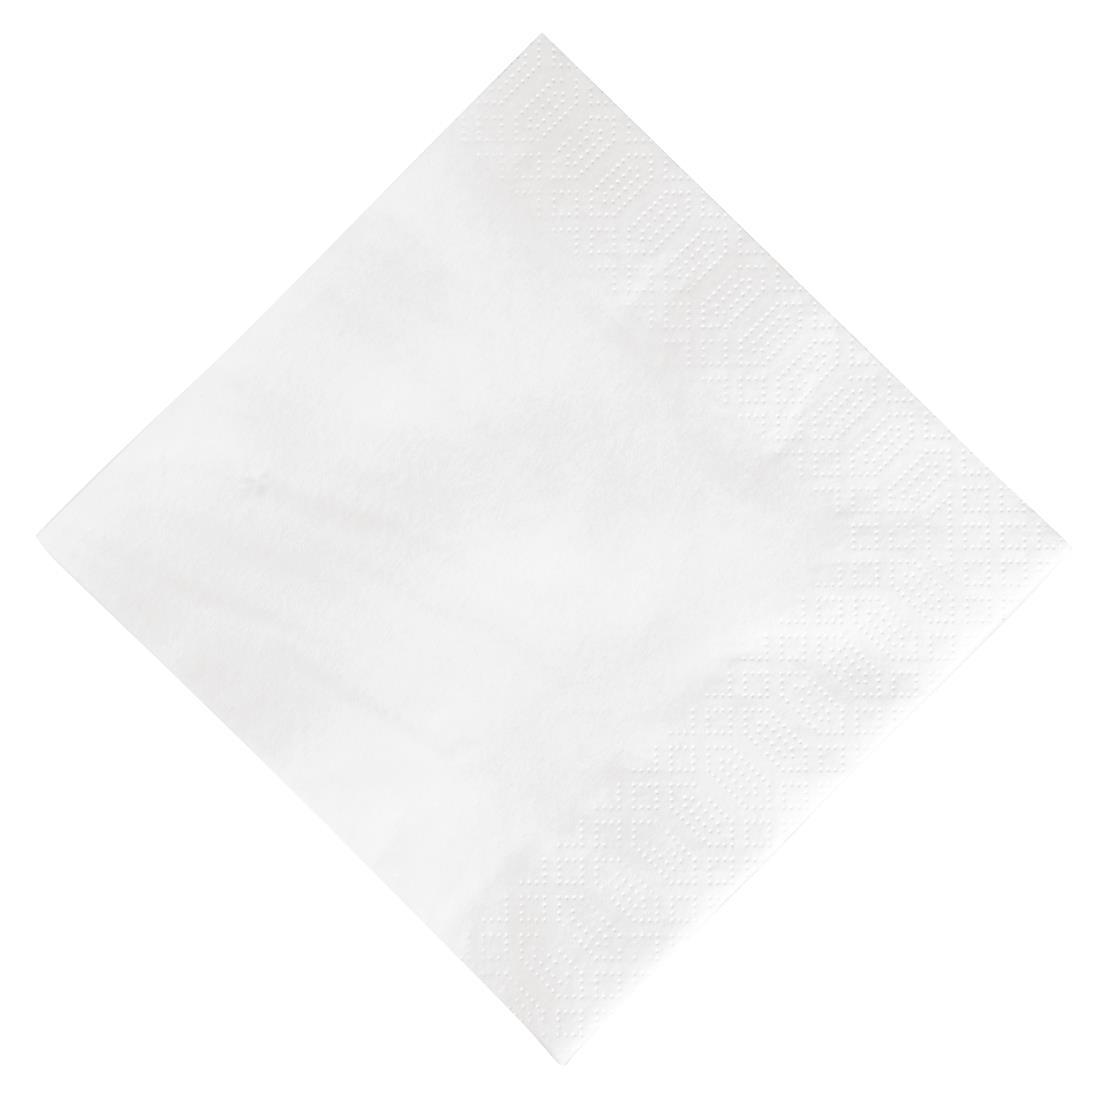 Duni Lunch Napkin White 33x33cm 3ply 1/4 Fold (Pack of 1000) - GJ108  - 1